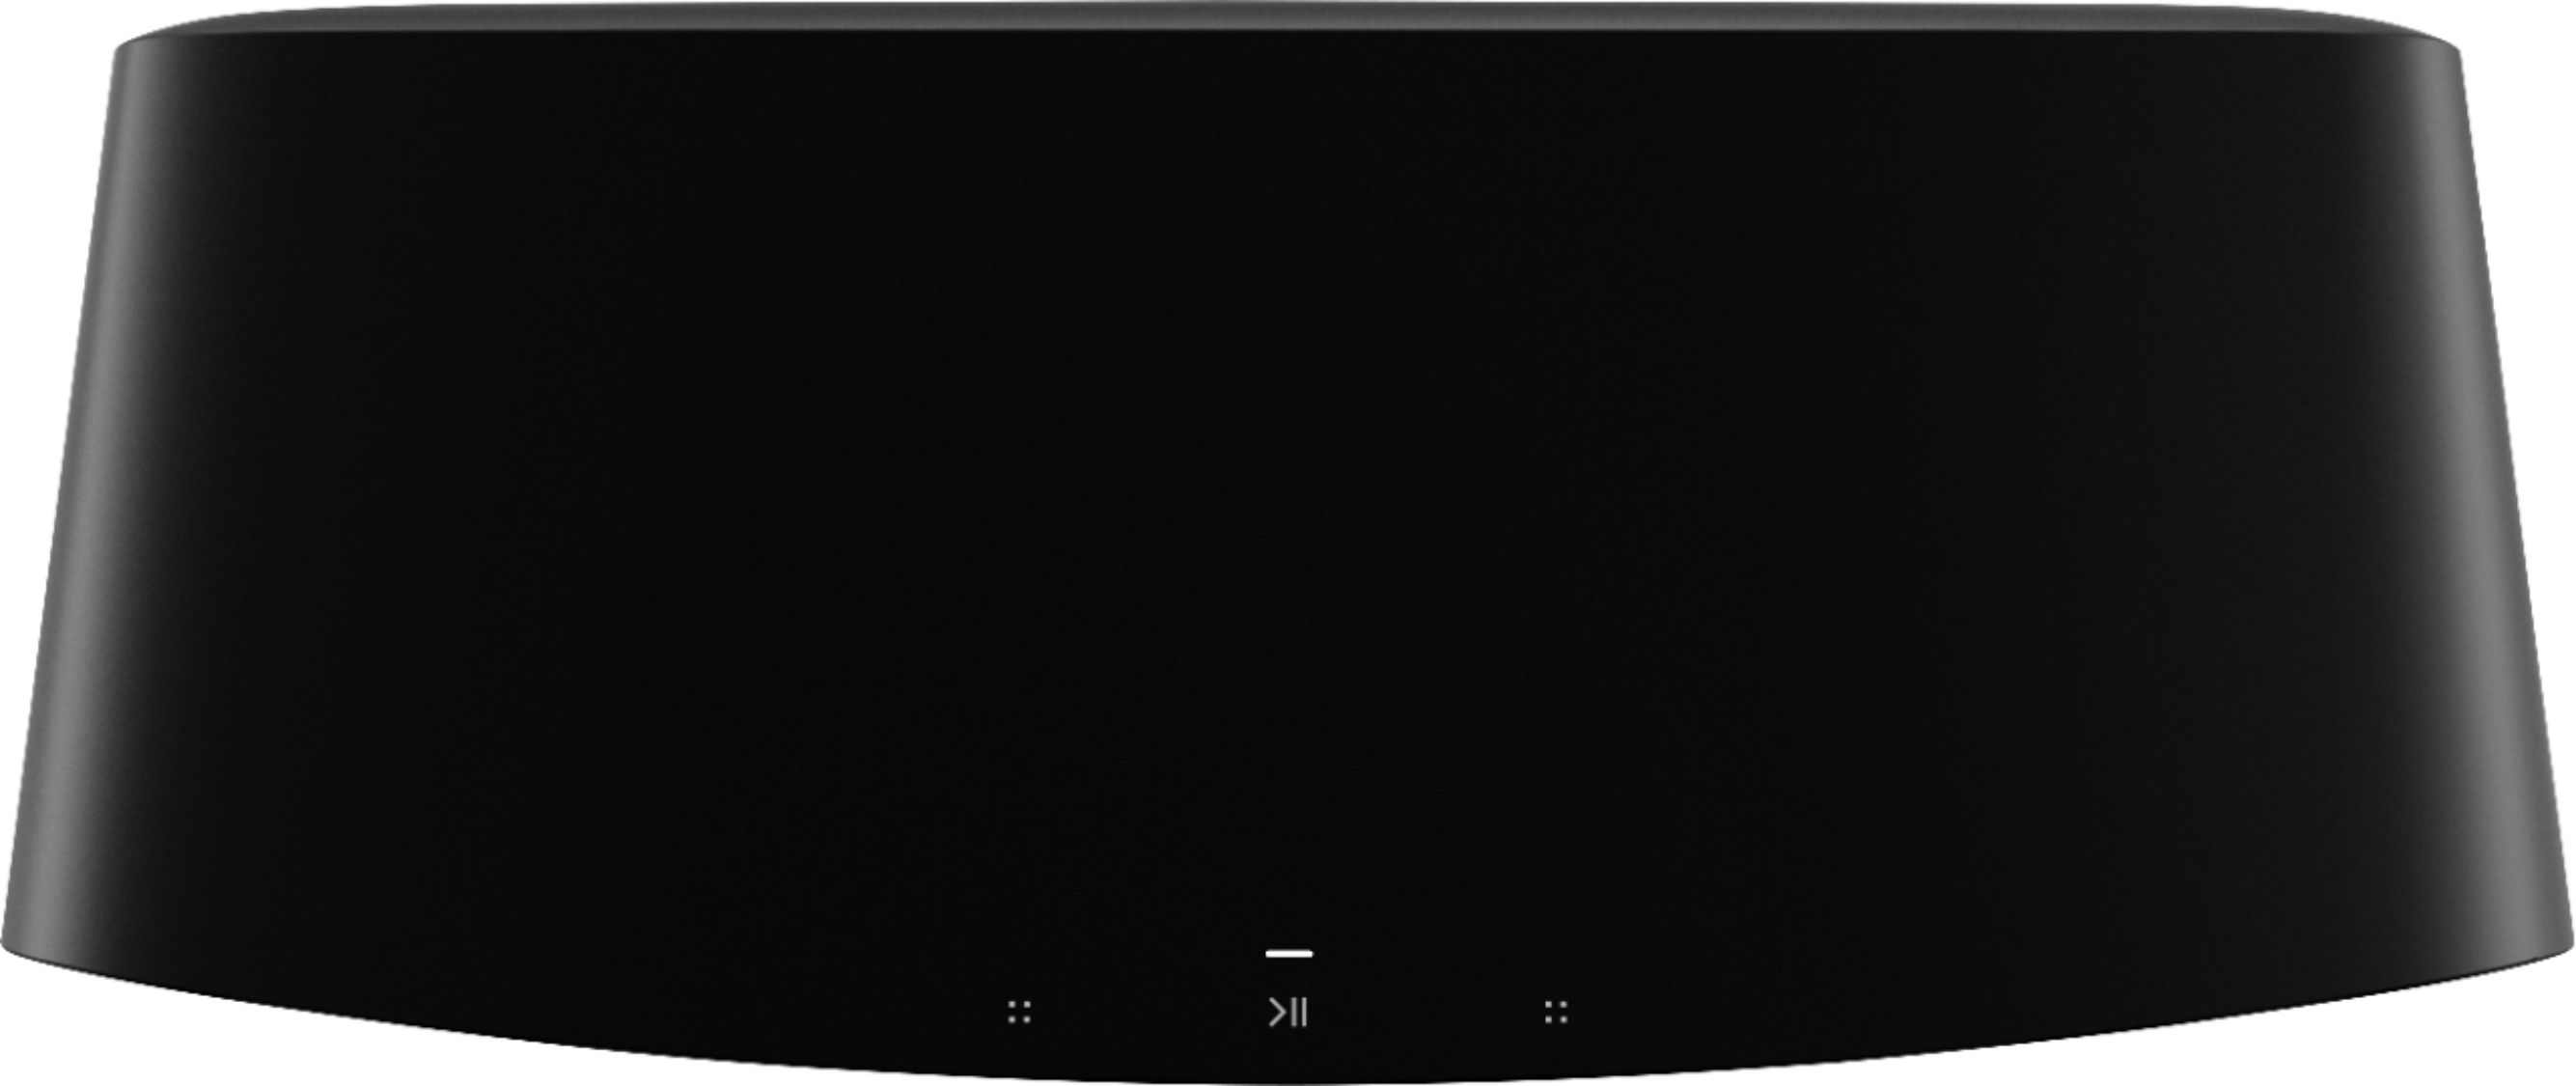 Sonos Five Smart Speaker FIVE1US1BLK - Best Buy